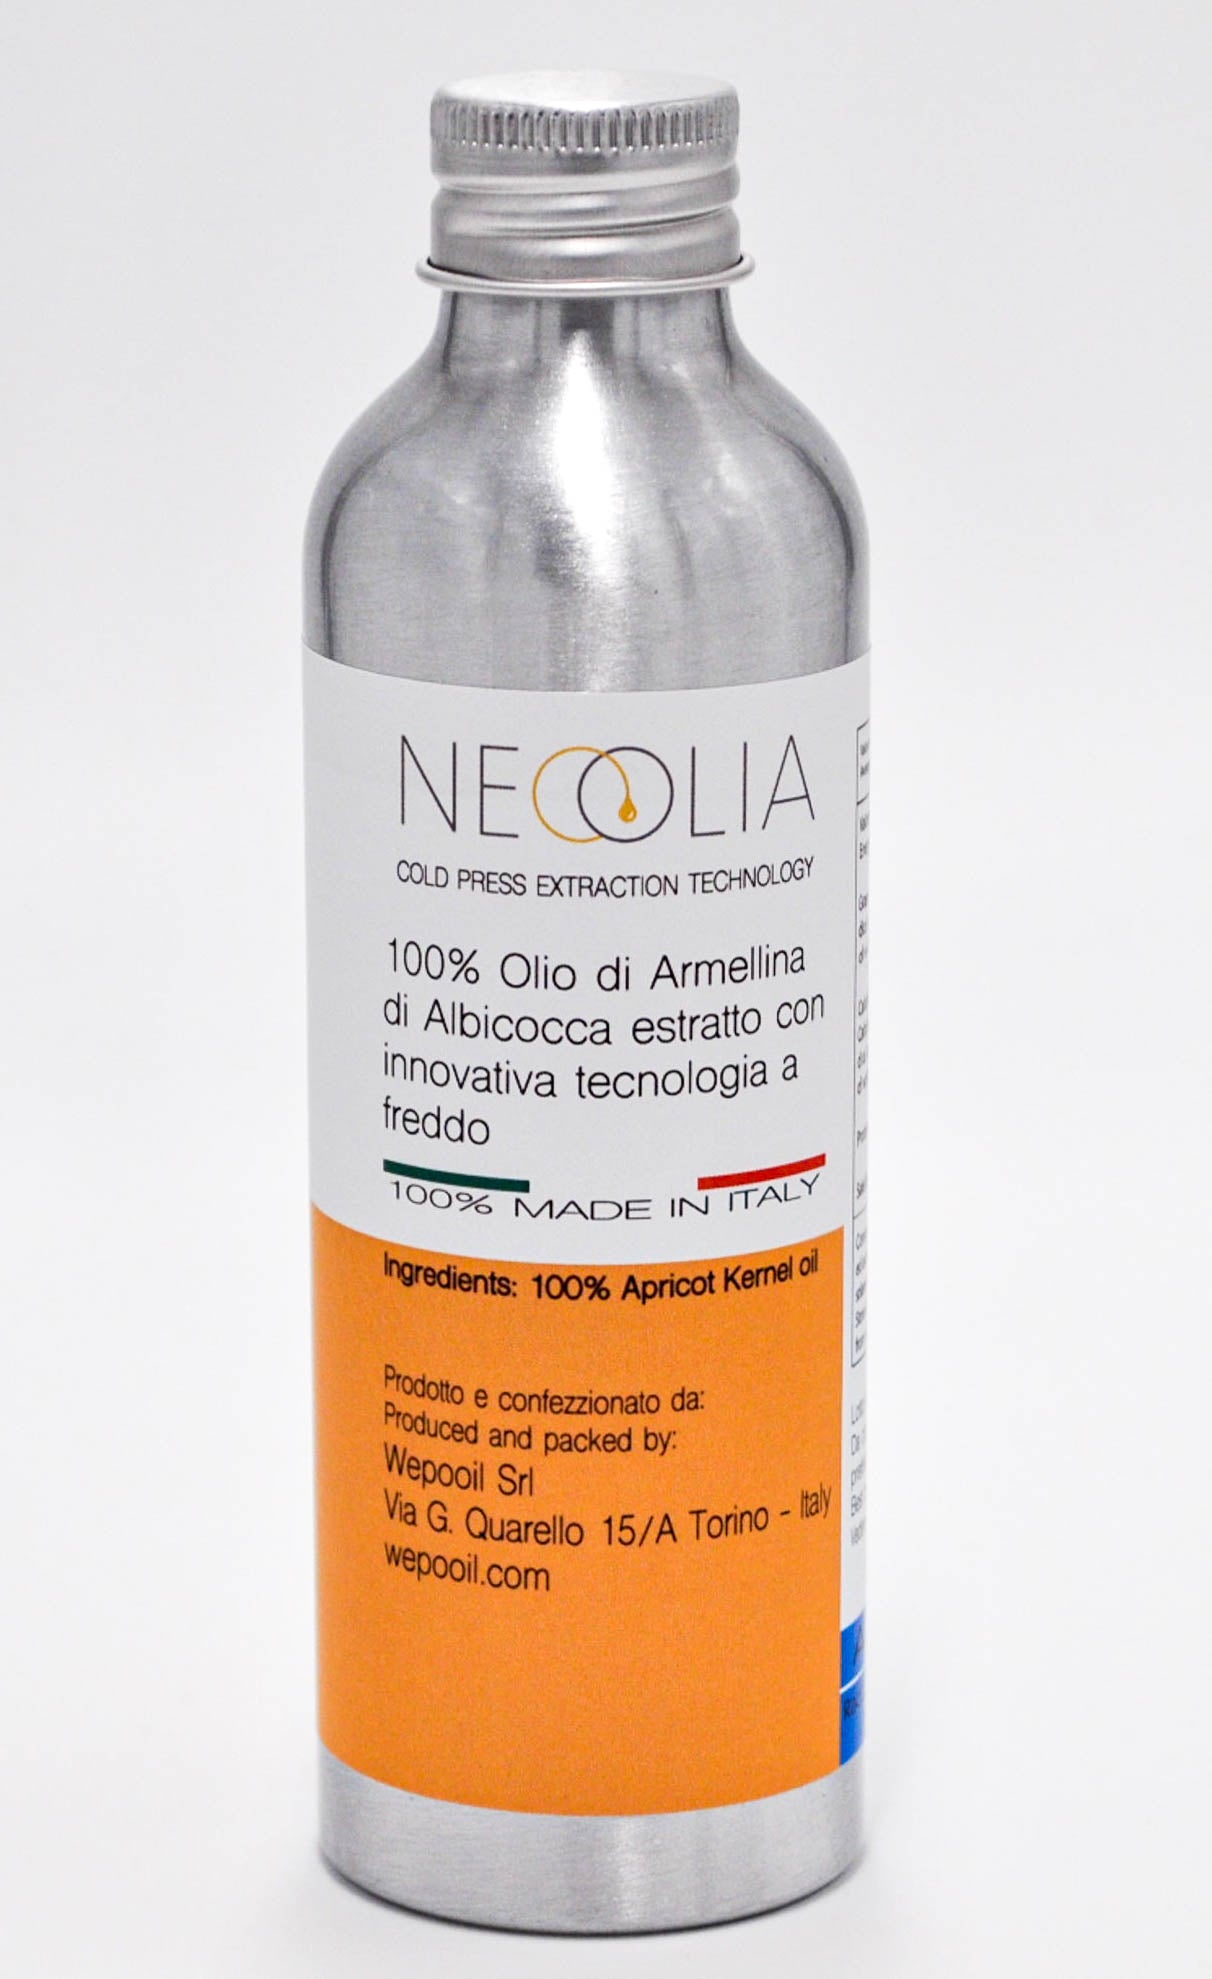 olio di armellina di albicocca - neoolia